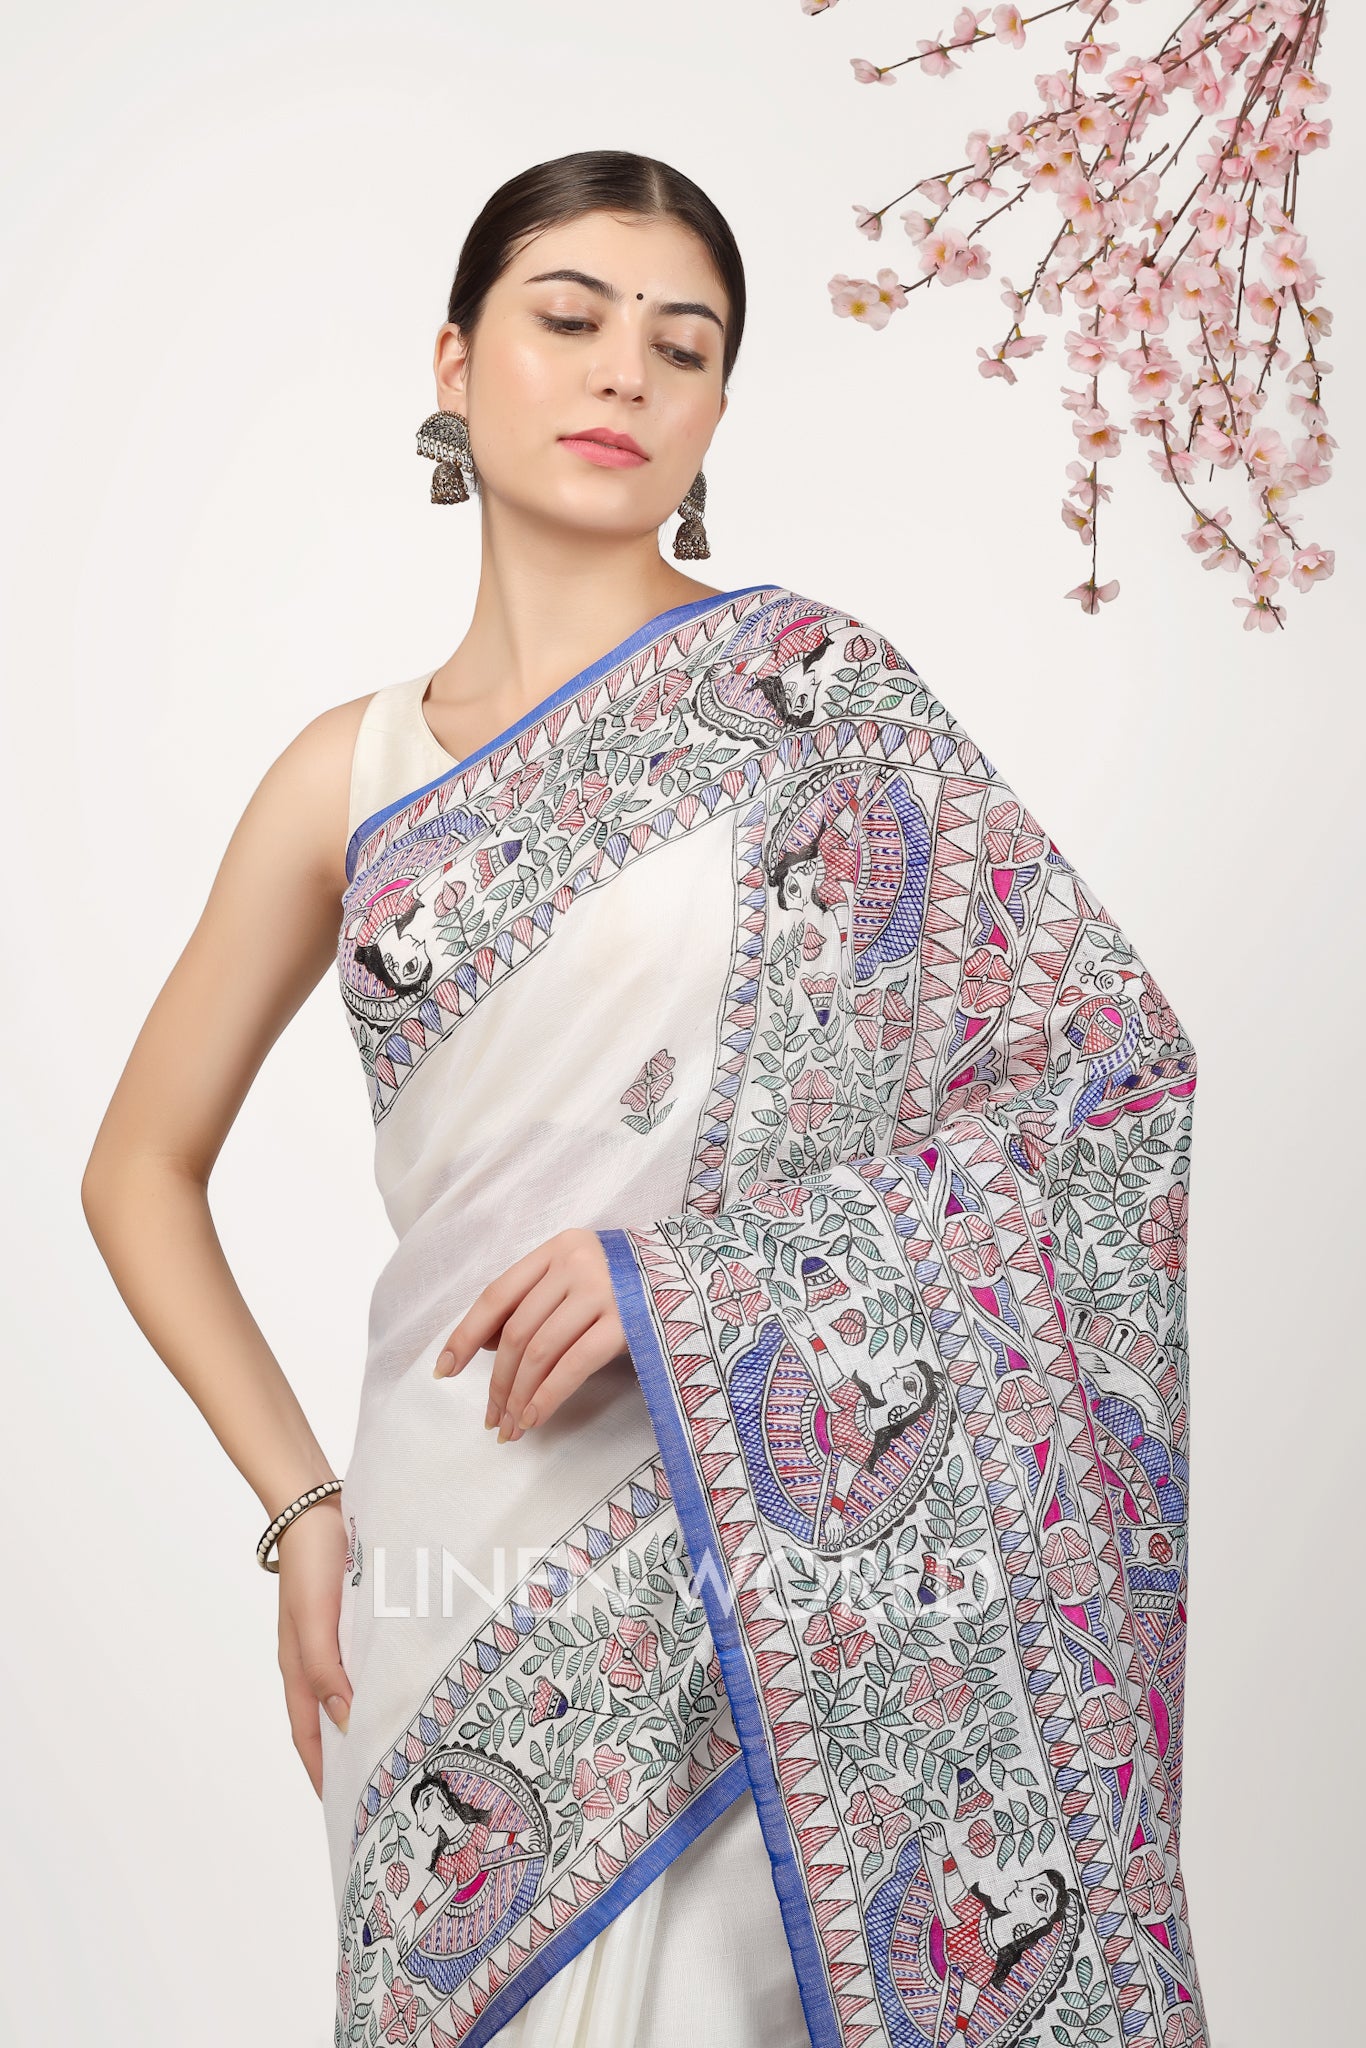 eshita - madhubani painted pure linen sari - linenworldonline.in